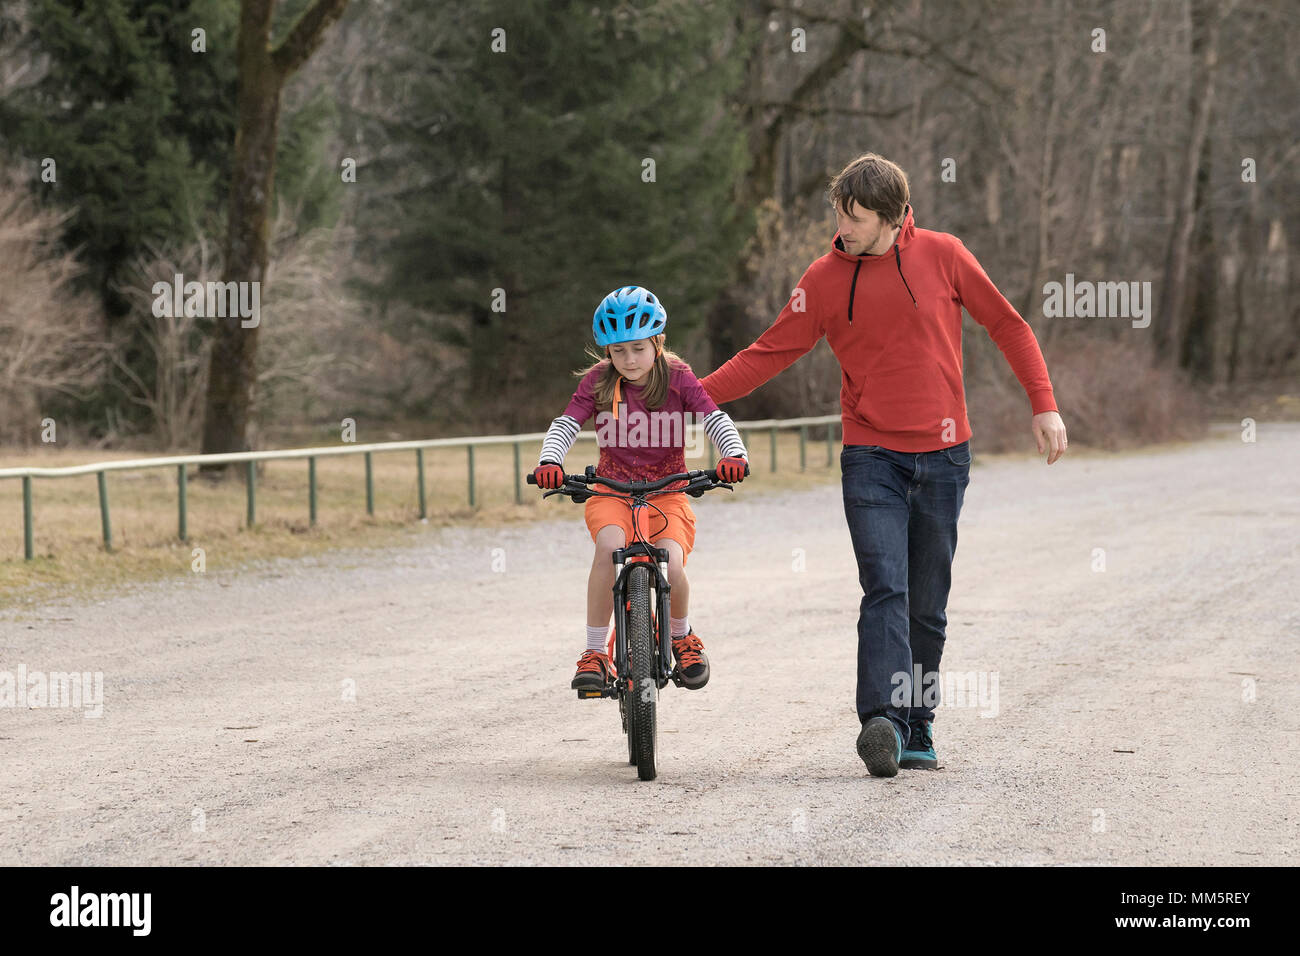 Aider l'homme fille aux yeux clos pour circuler à bicyclette, Bavière, Allemagne Banque D'Images